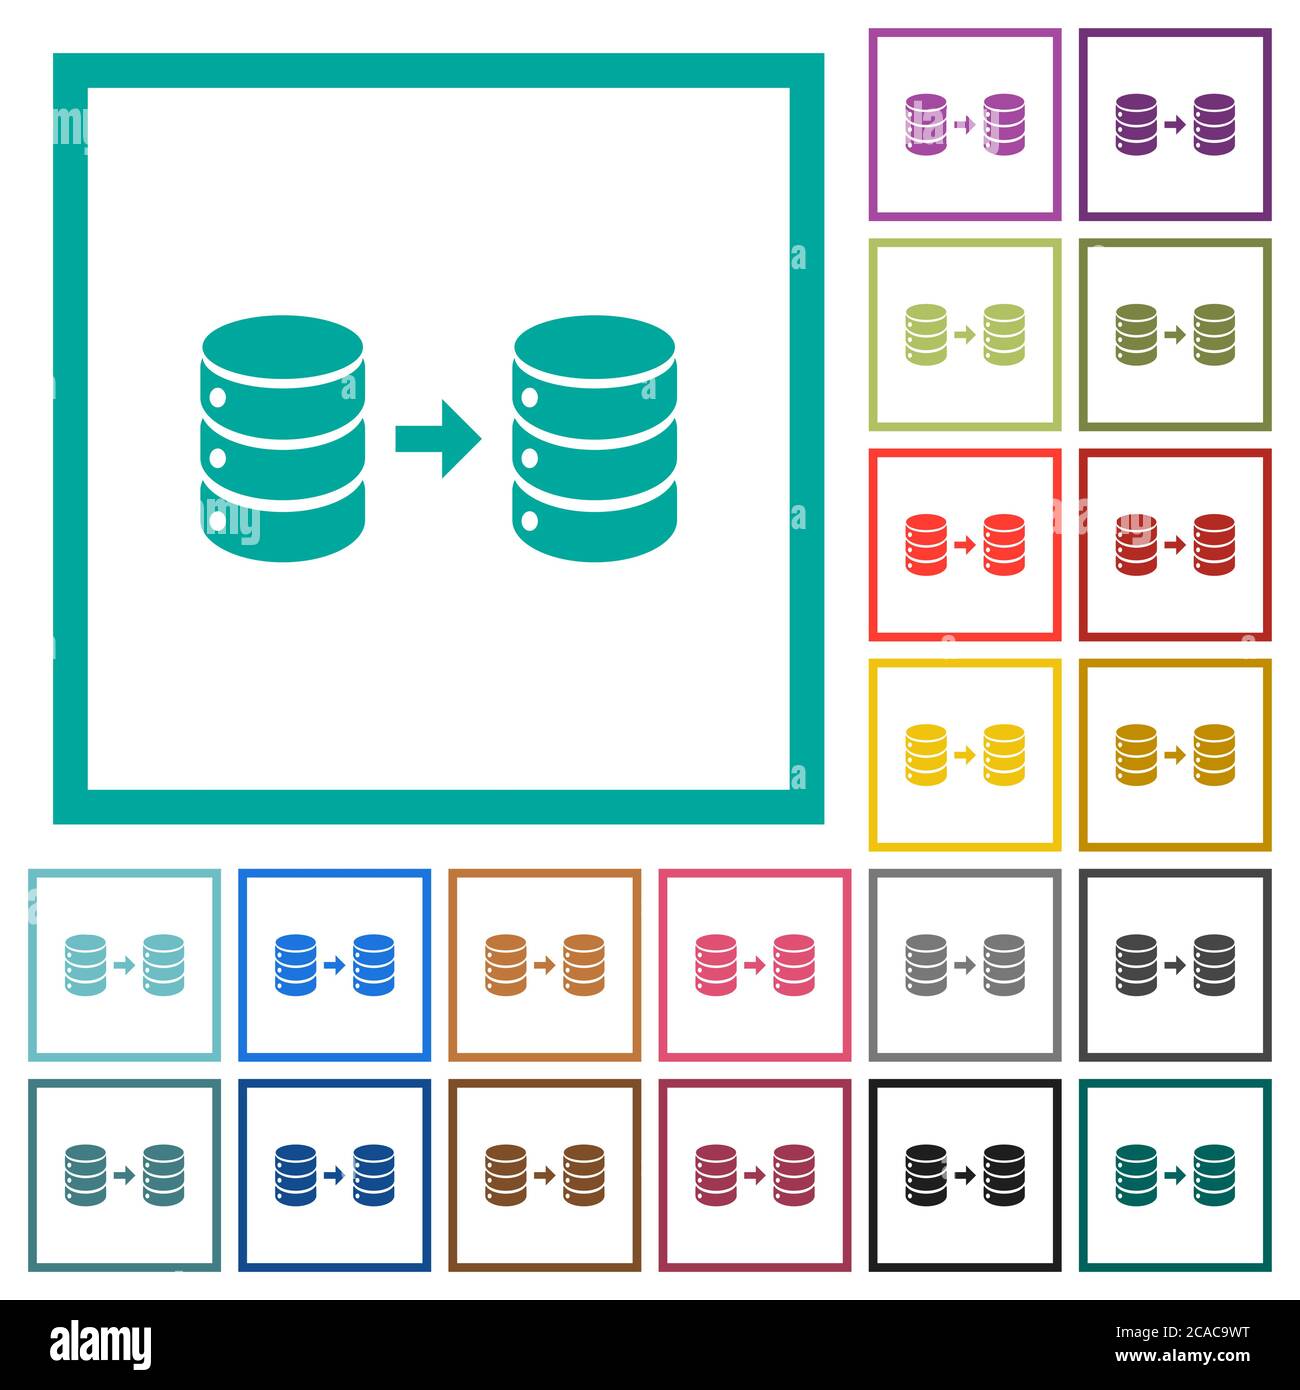 Datenbankspiegelung flacher Farbsymbole mit Quadranten-Rahmen auf weißem Hintergrund Stock Vektor